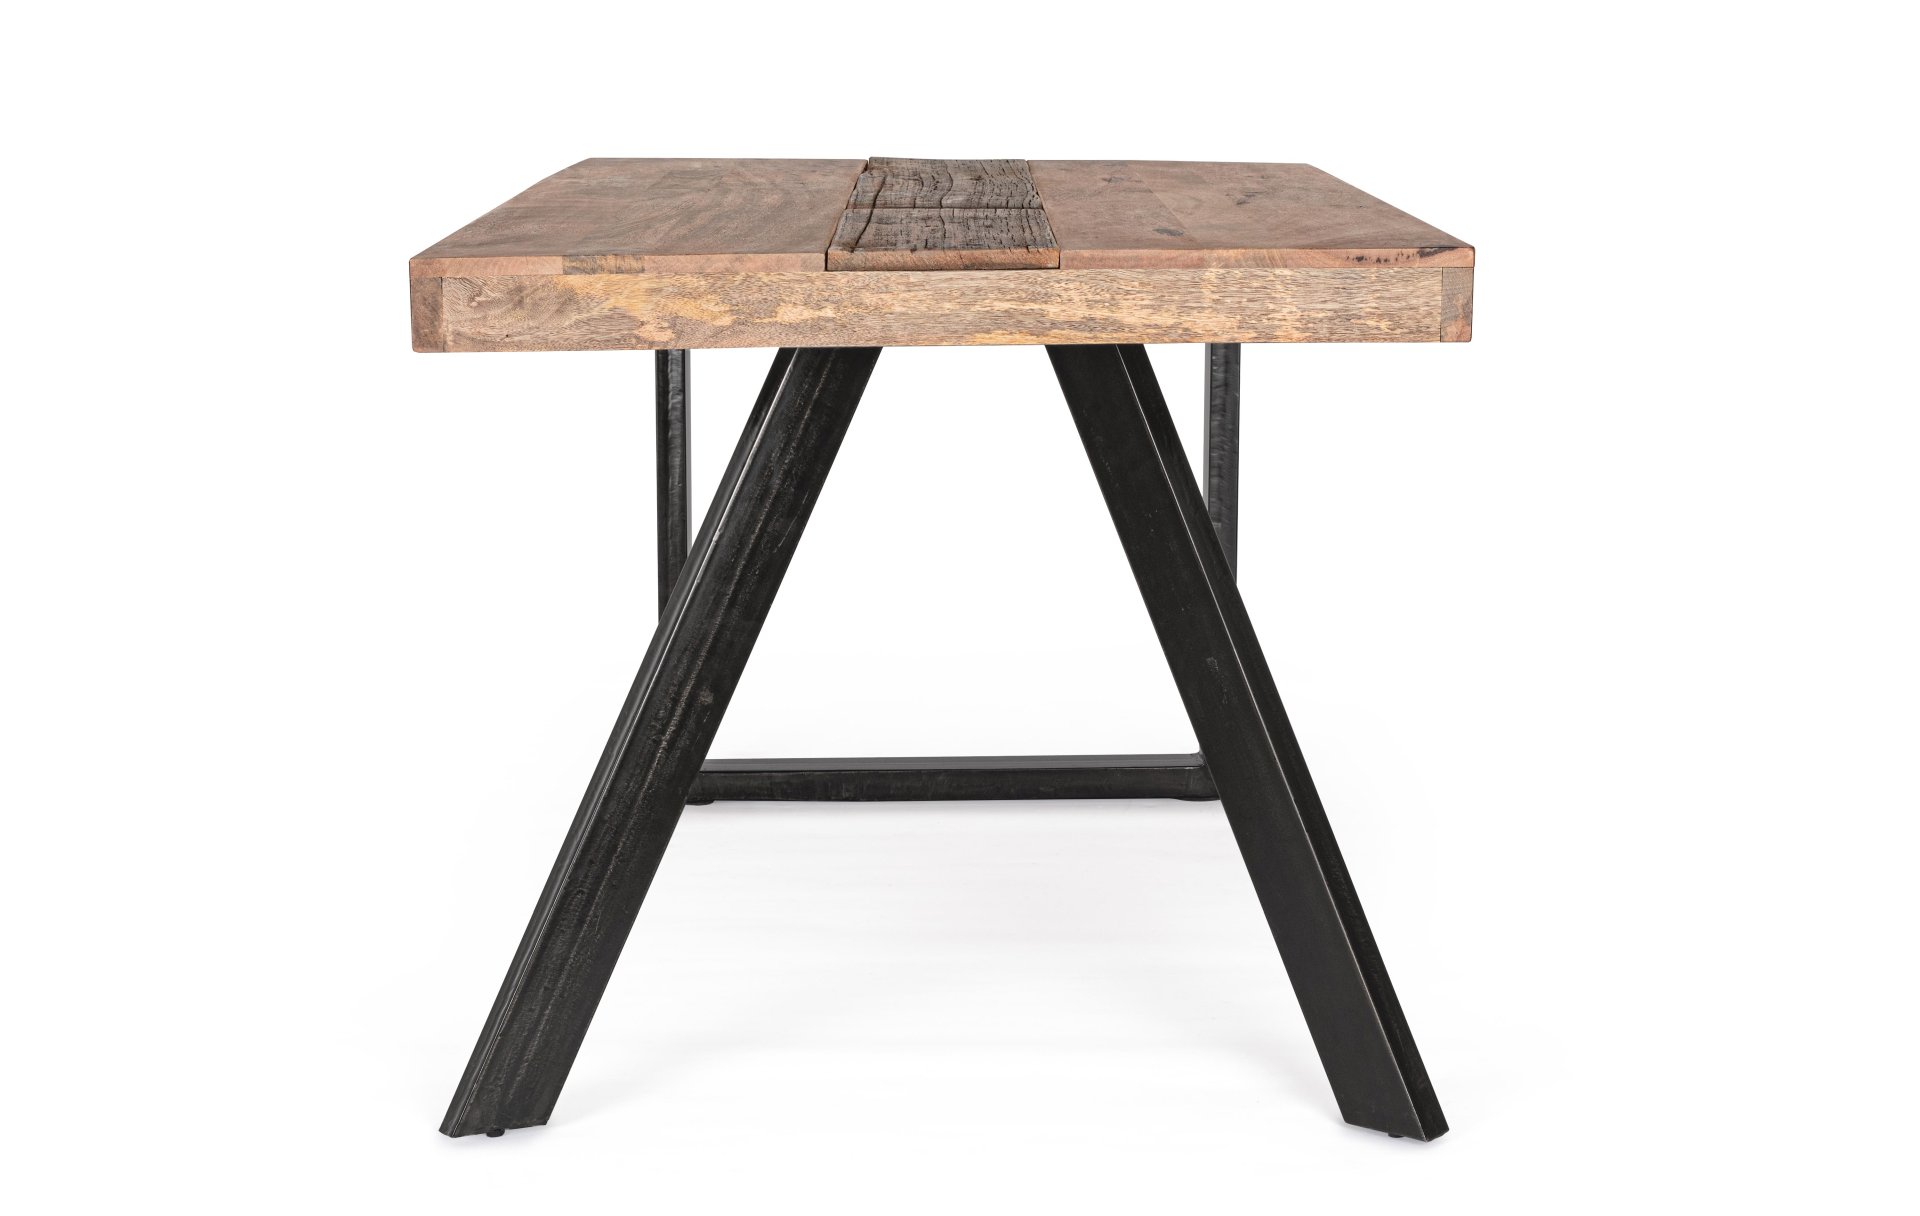 Der Esstisch Manchester überzeugt mit seinem klassischem Design gefertigt wurde er aus Mangoholz, welches einen natürlichen Farbton besitzt. Das Gestell des Tisches ist aus Metall und ist Schwarz. Der Tisch besitzt eine Breite von 160 cm.